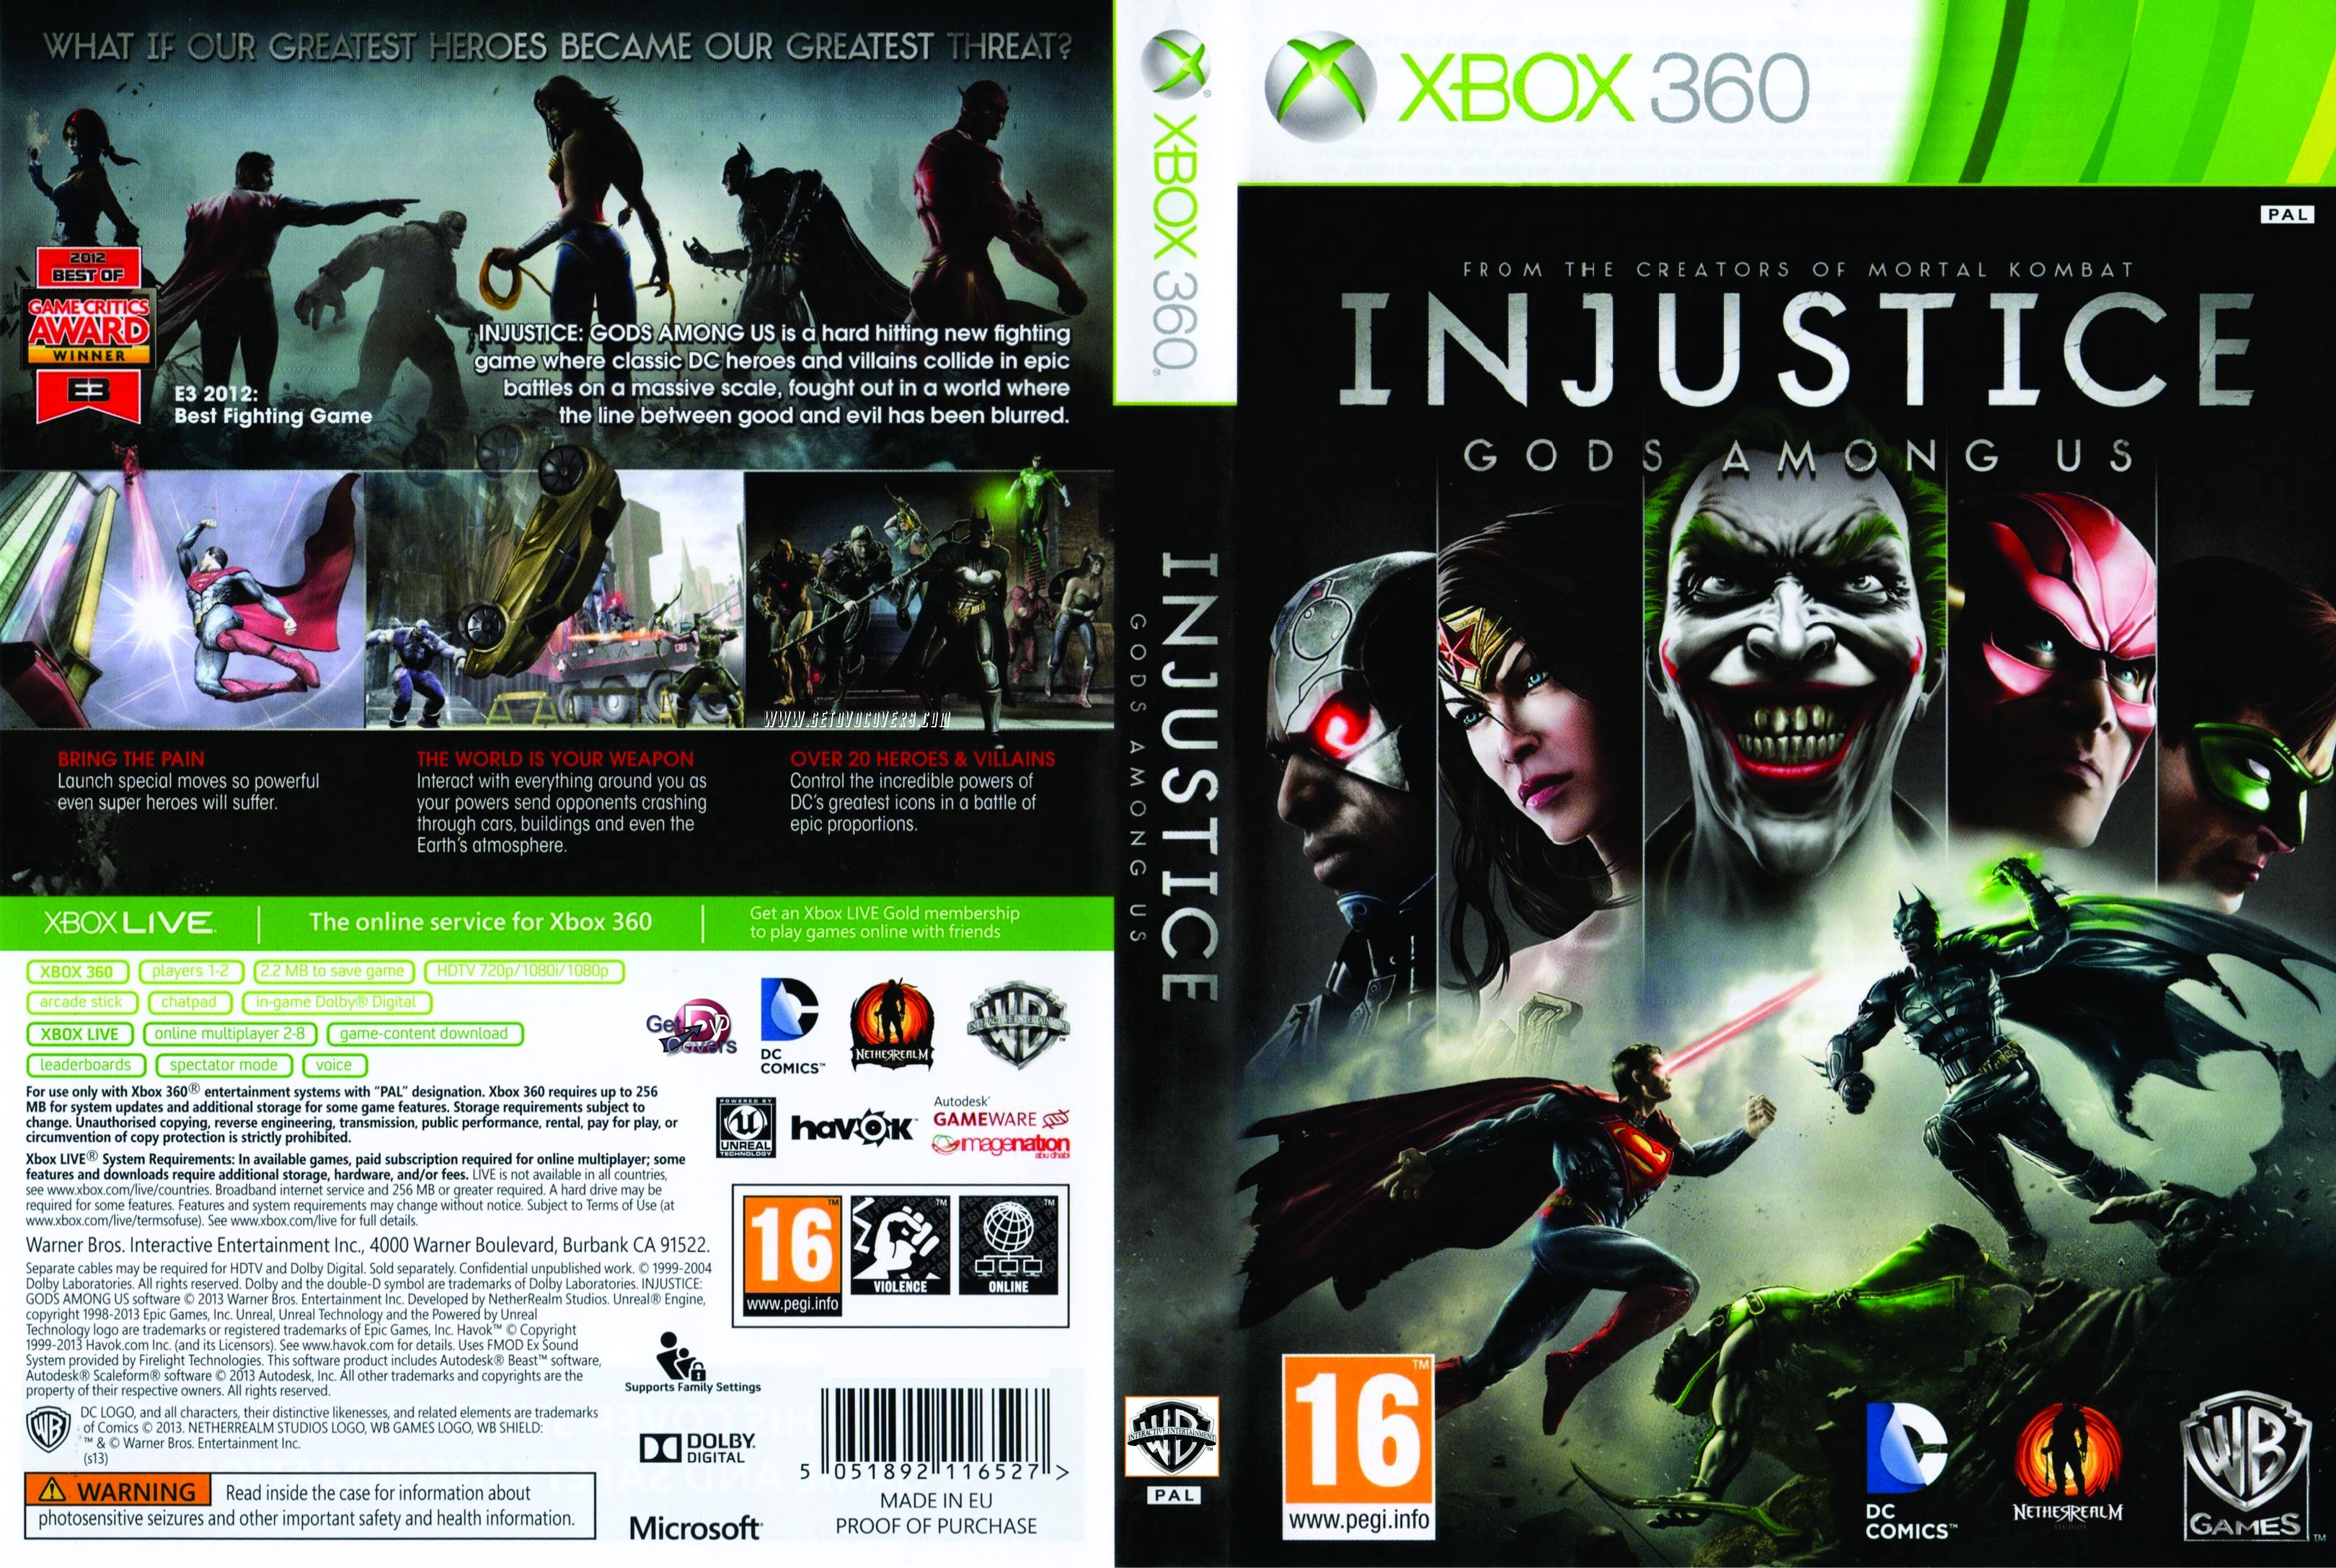 Игры на хбокс 360 на флешку. Injustice Xbox 360 обложка. Injustice Xbox 360 диск. Injustice Gods among us Xbox 360. [Xbox 360] Injustice: Gods among us (2013).